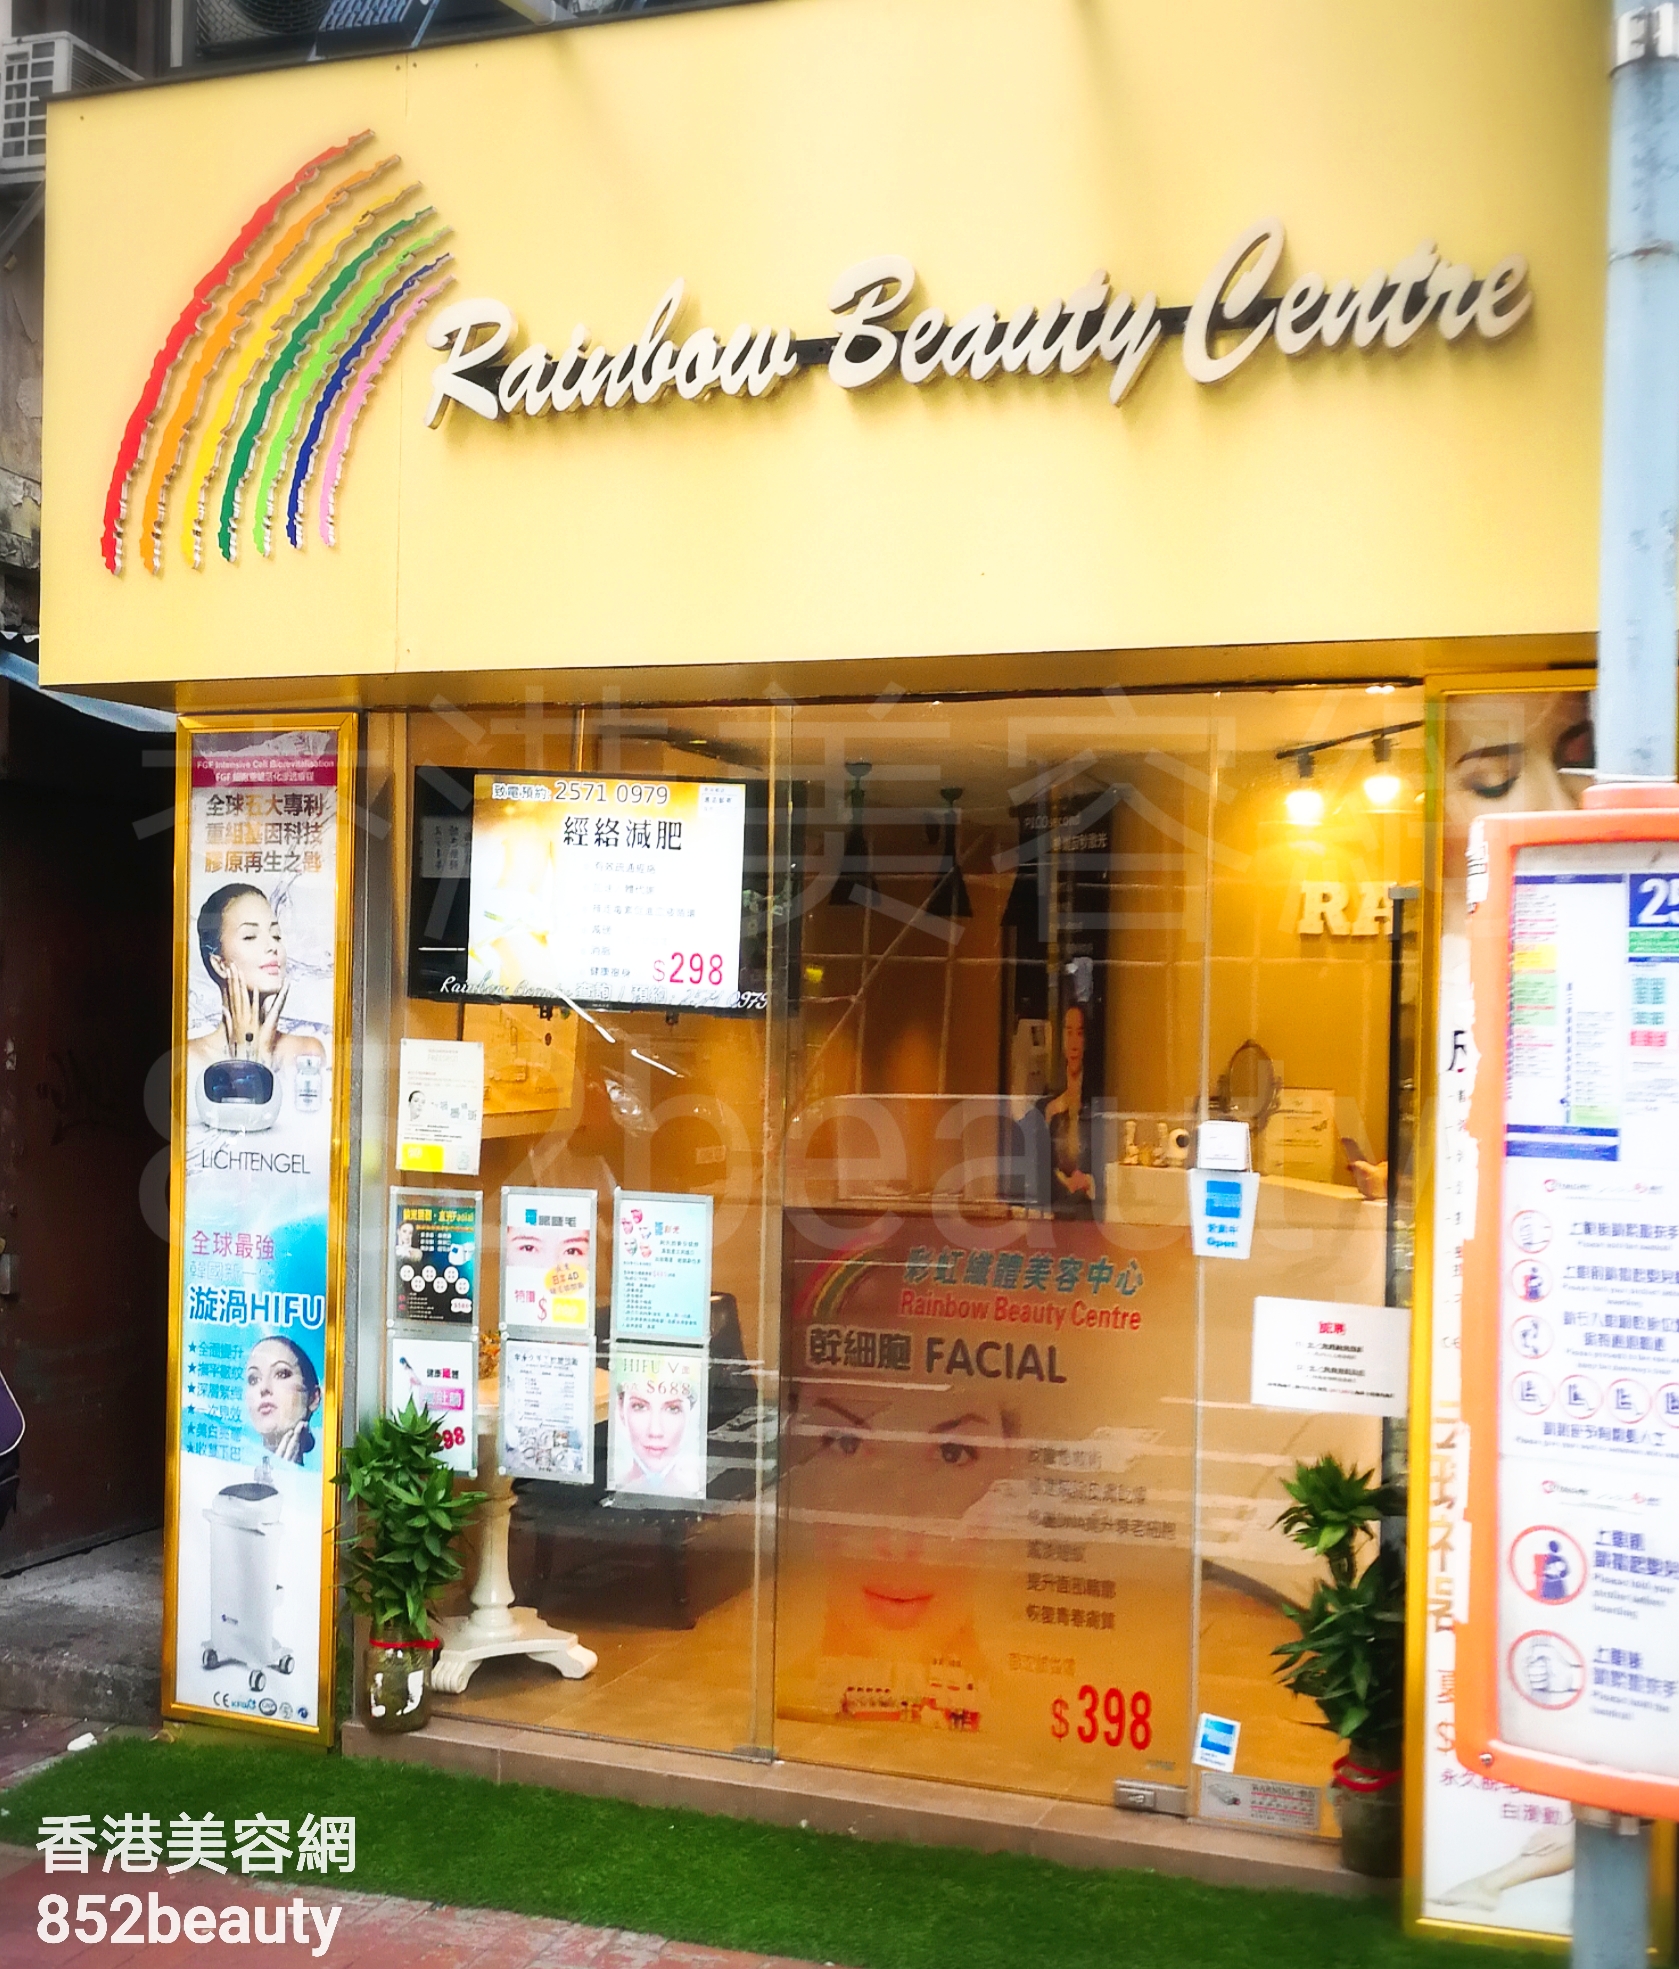 Optical Aesthetics: Rainbow Beauty Centre